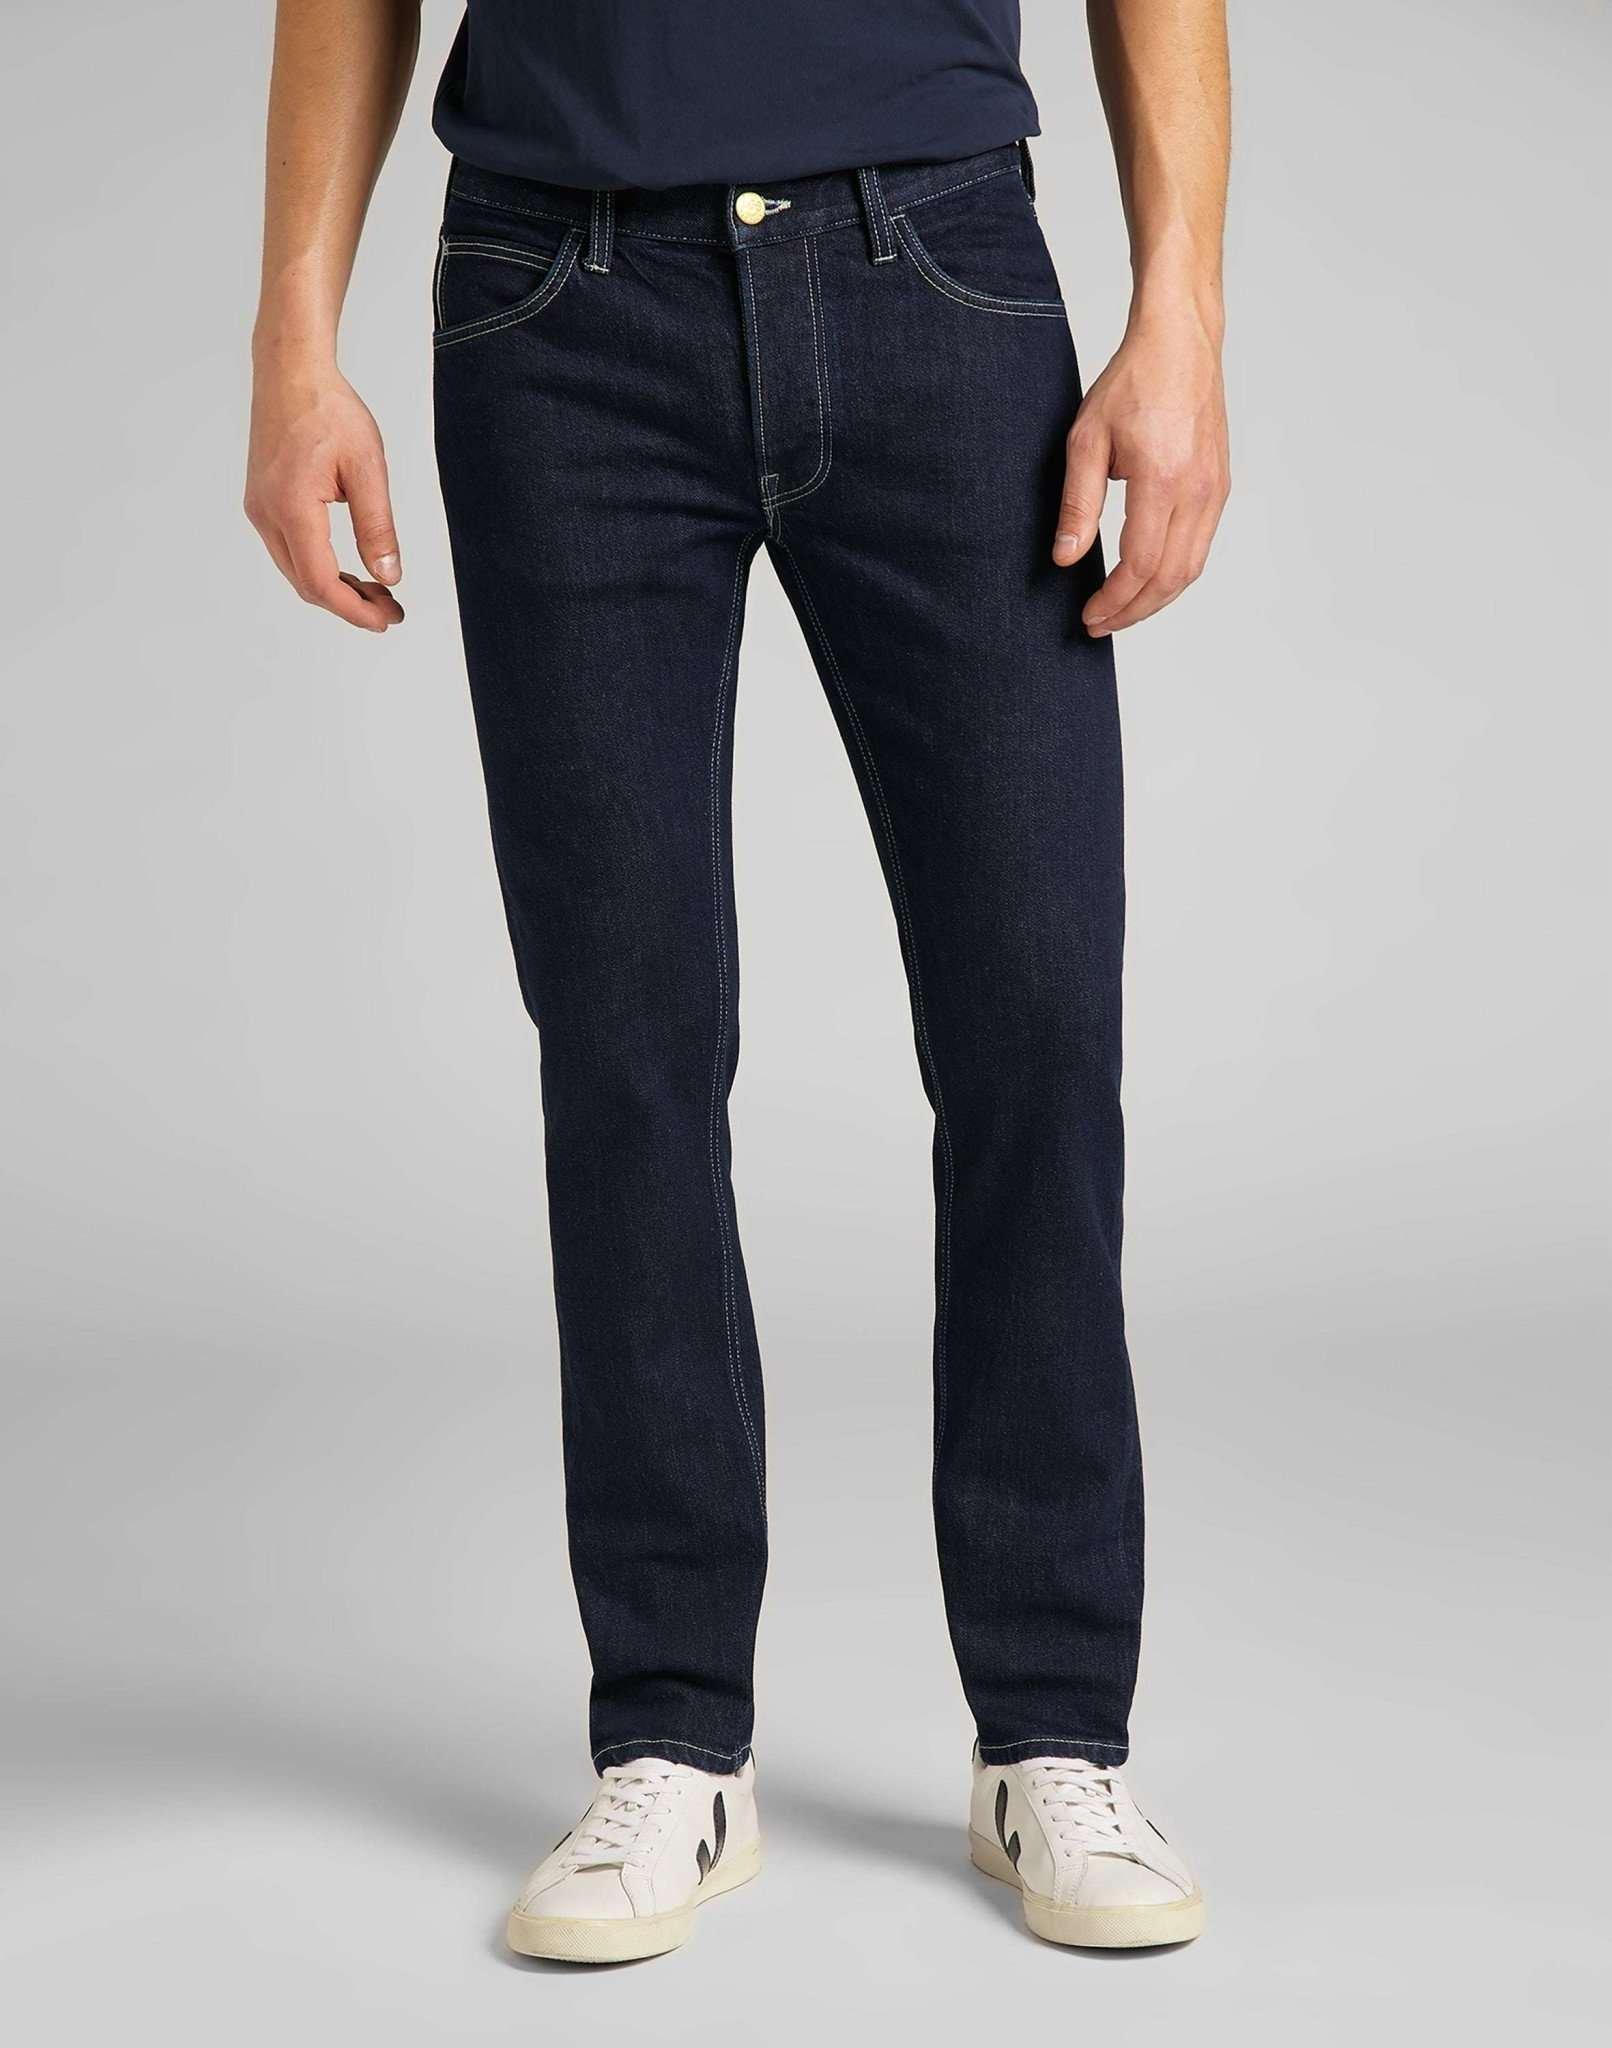 Jeans Slim Fit Luke Herren Blau Denim L34/W31 von Lee